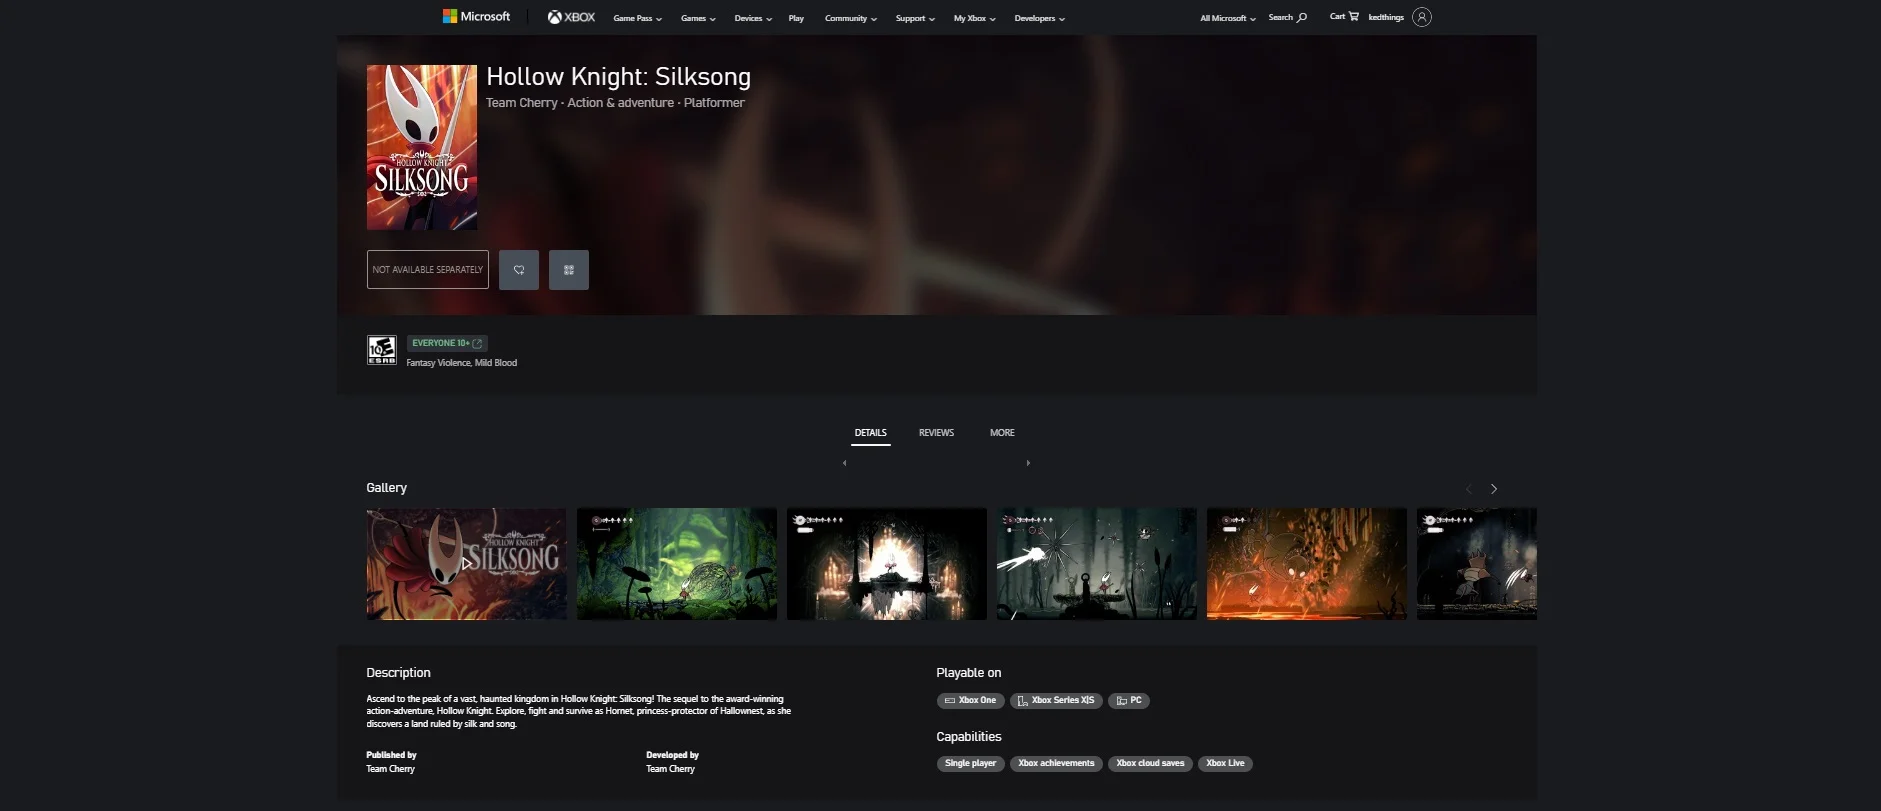 Страница долгожданной Hollow Knight Silksong появилась в магазине Xbox - фото 1